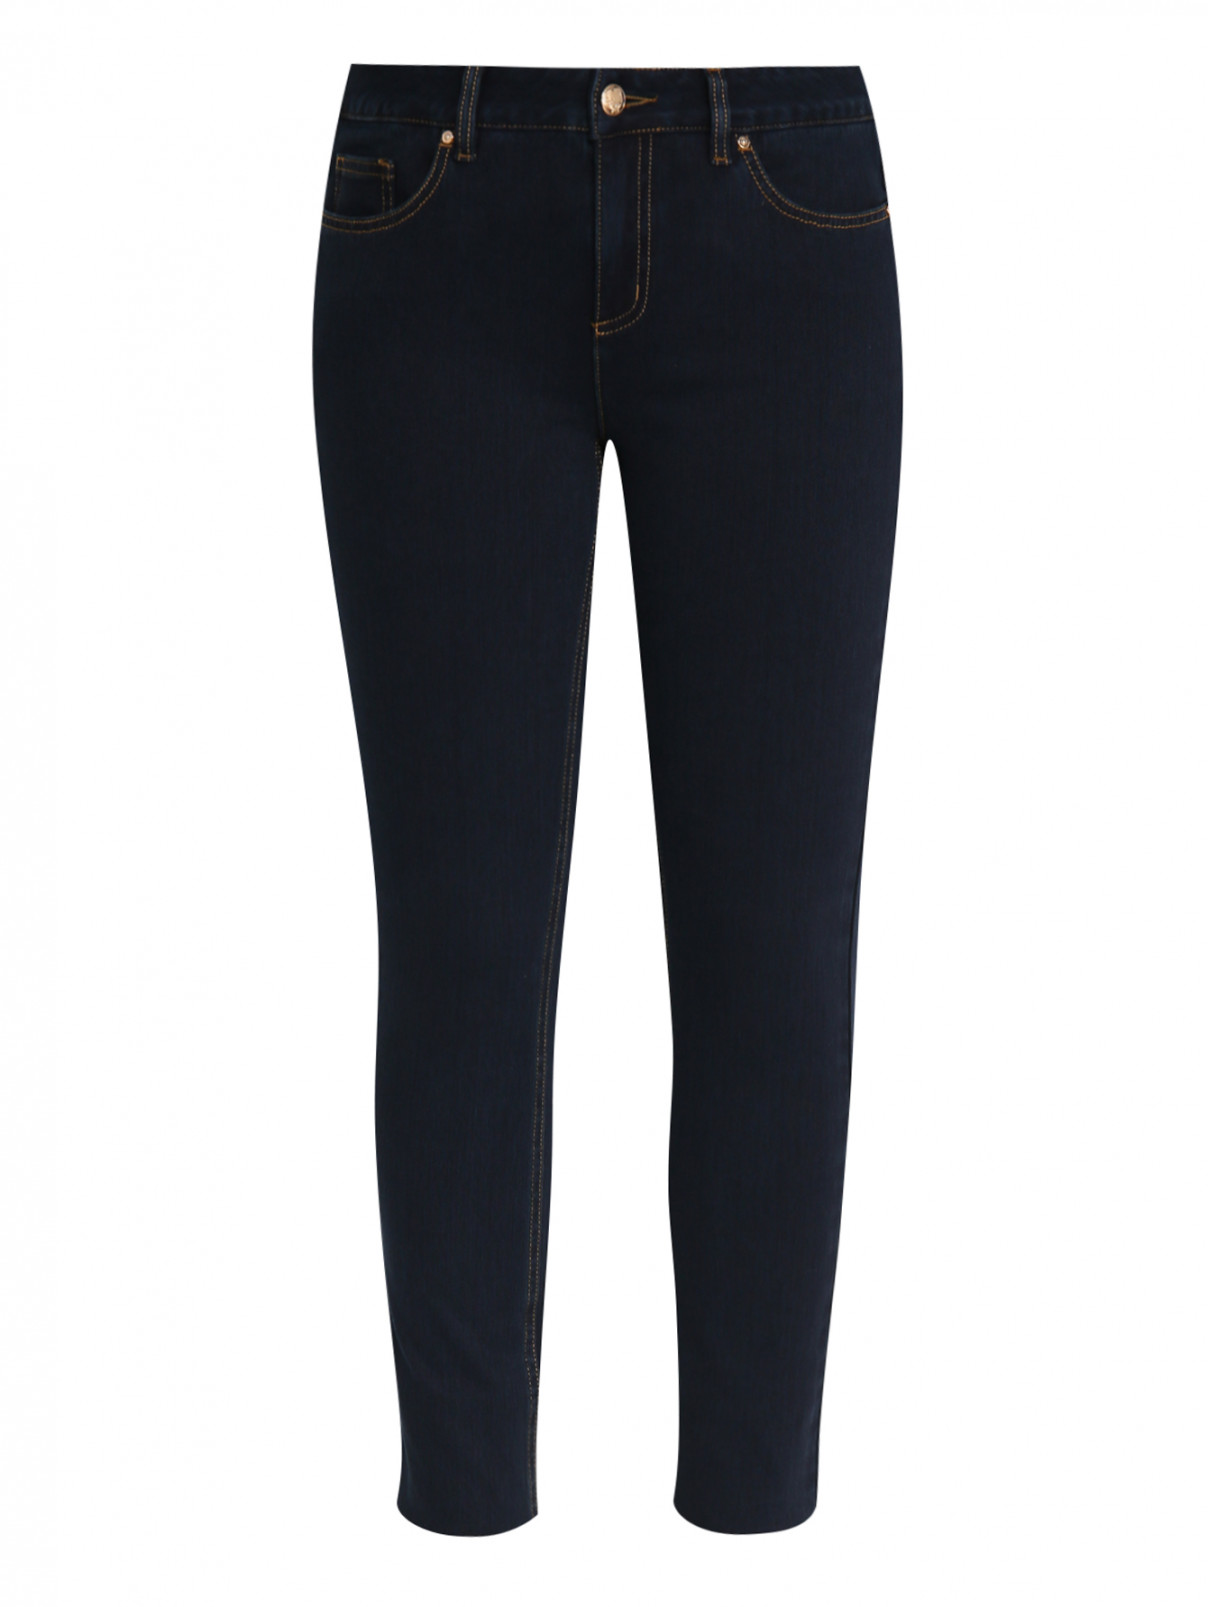 Узкие джинсы из плотного эластичного денима Ashley Graham x Marina Rinaldi  –  Общий вид  – Цвет:  Синий